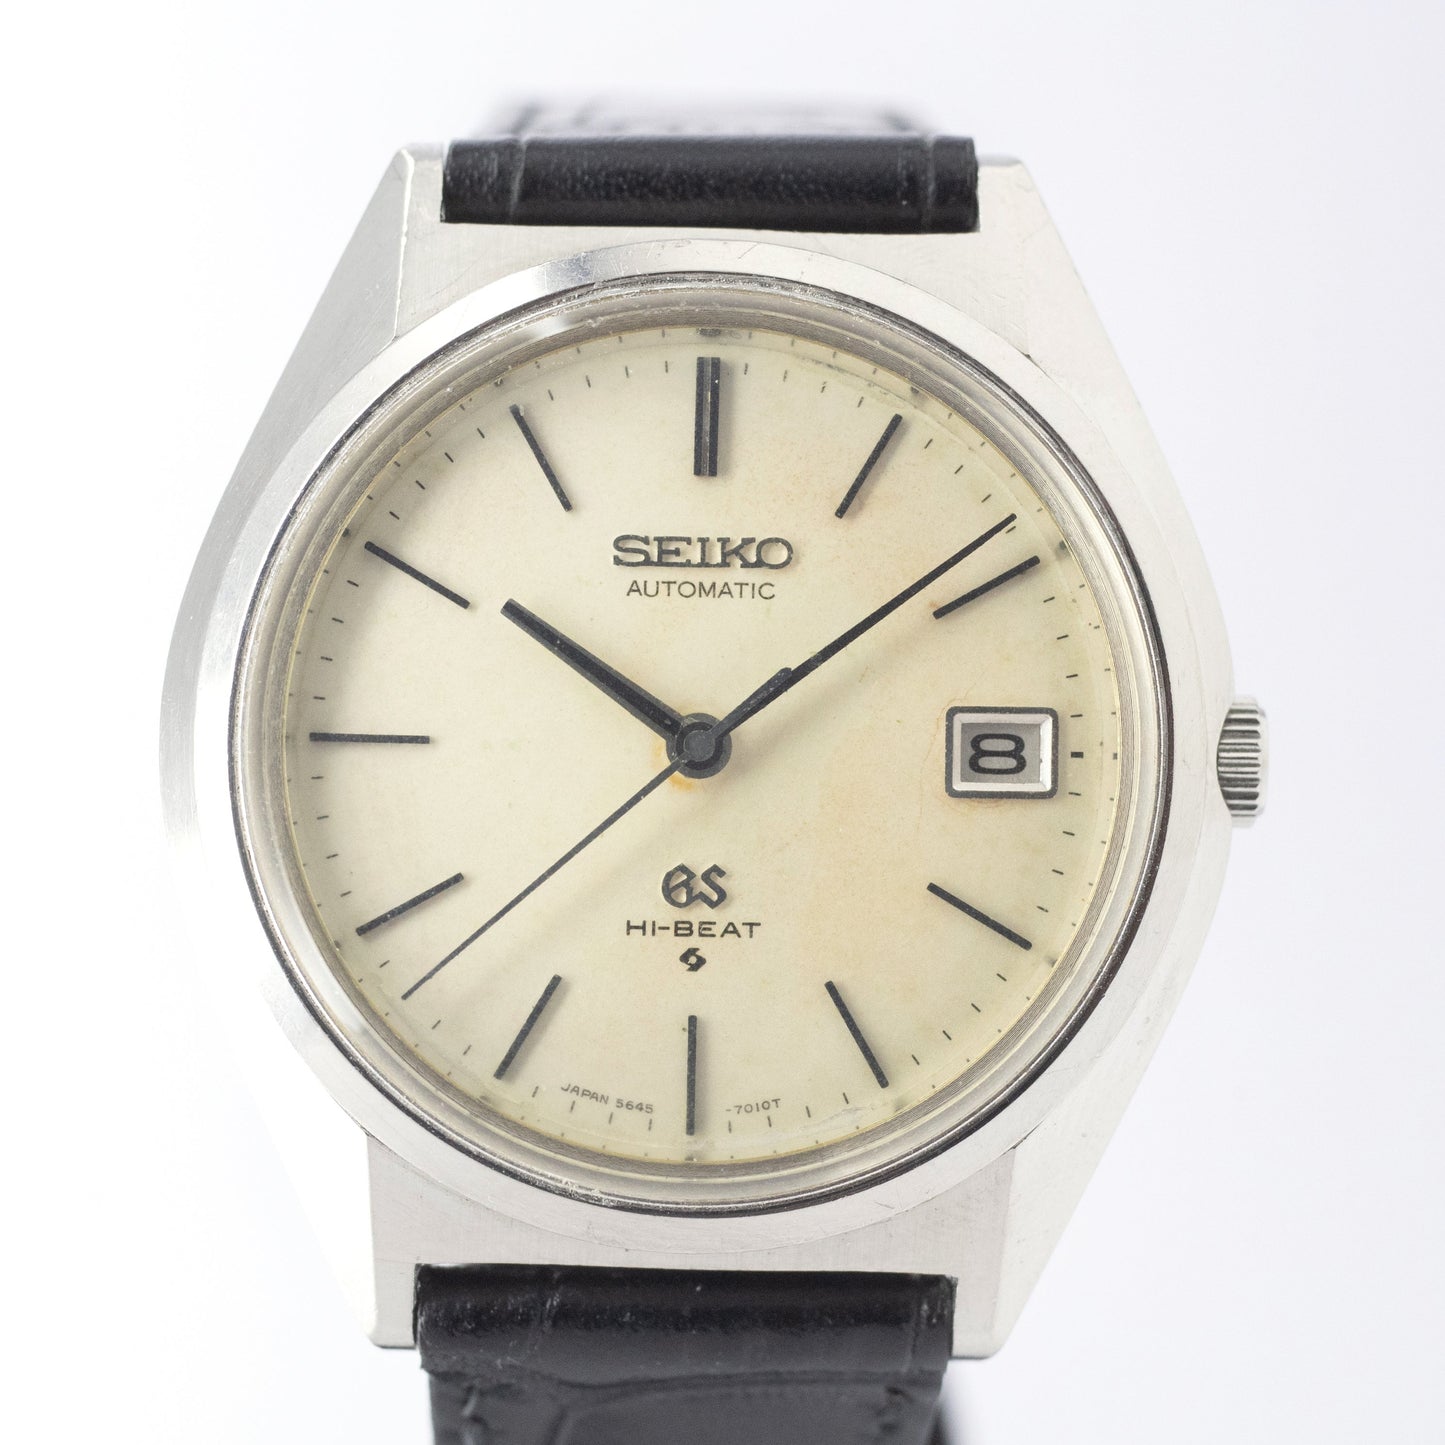 SEIKO 1971年製 56グランドセイコー Ref.5645-7010 アイボリーダイヤル